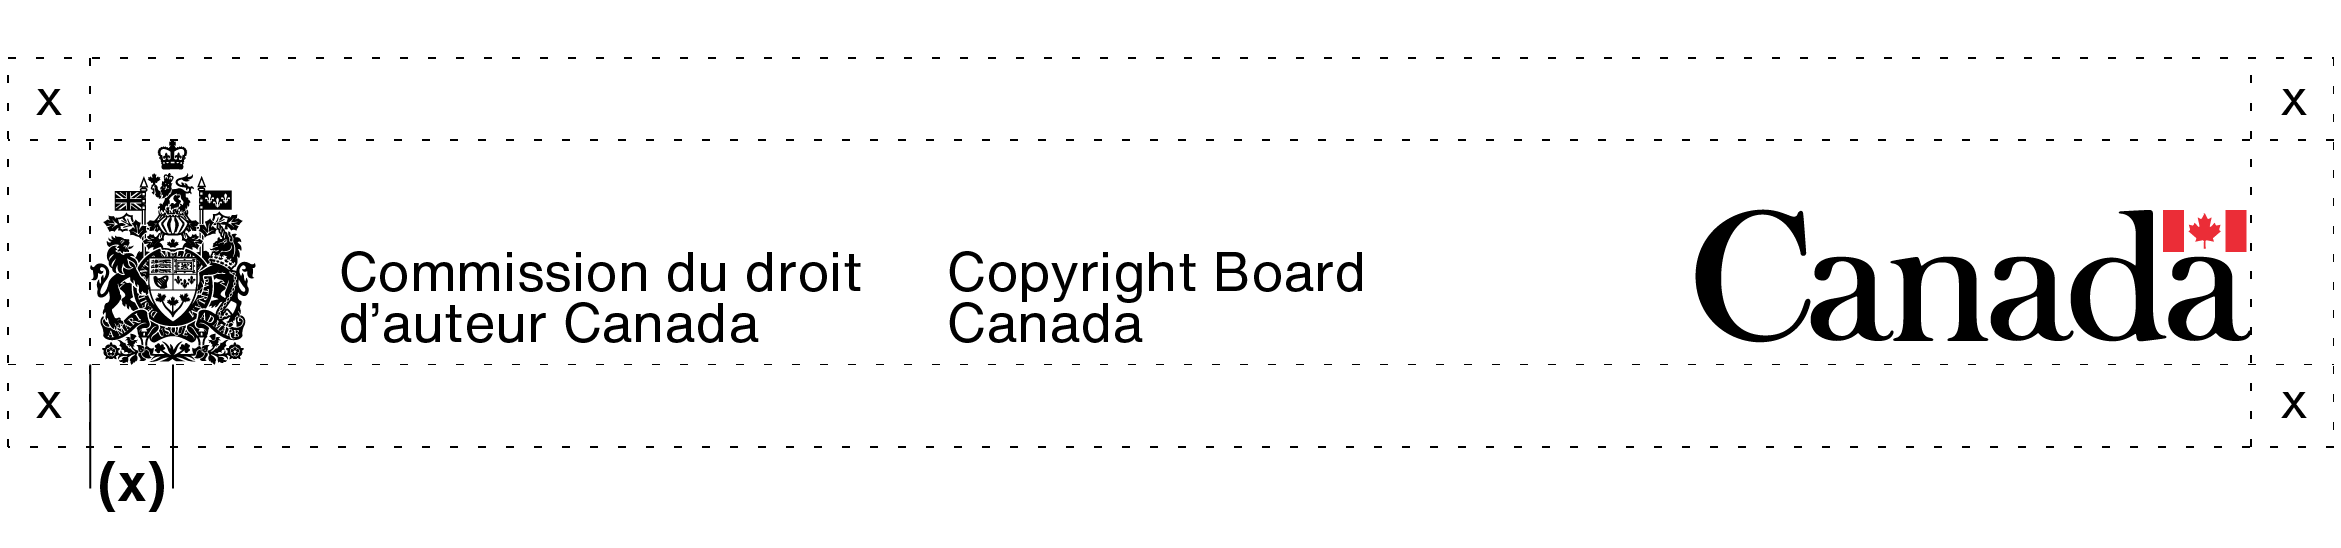 L’espace libre autour de la signature avec armoiries de la Commission du droit d’auteur Canada et du mot-symbole « Canada ». Cet espace libre à laisser est expliqué dans le texte ci-dessus.